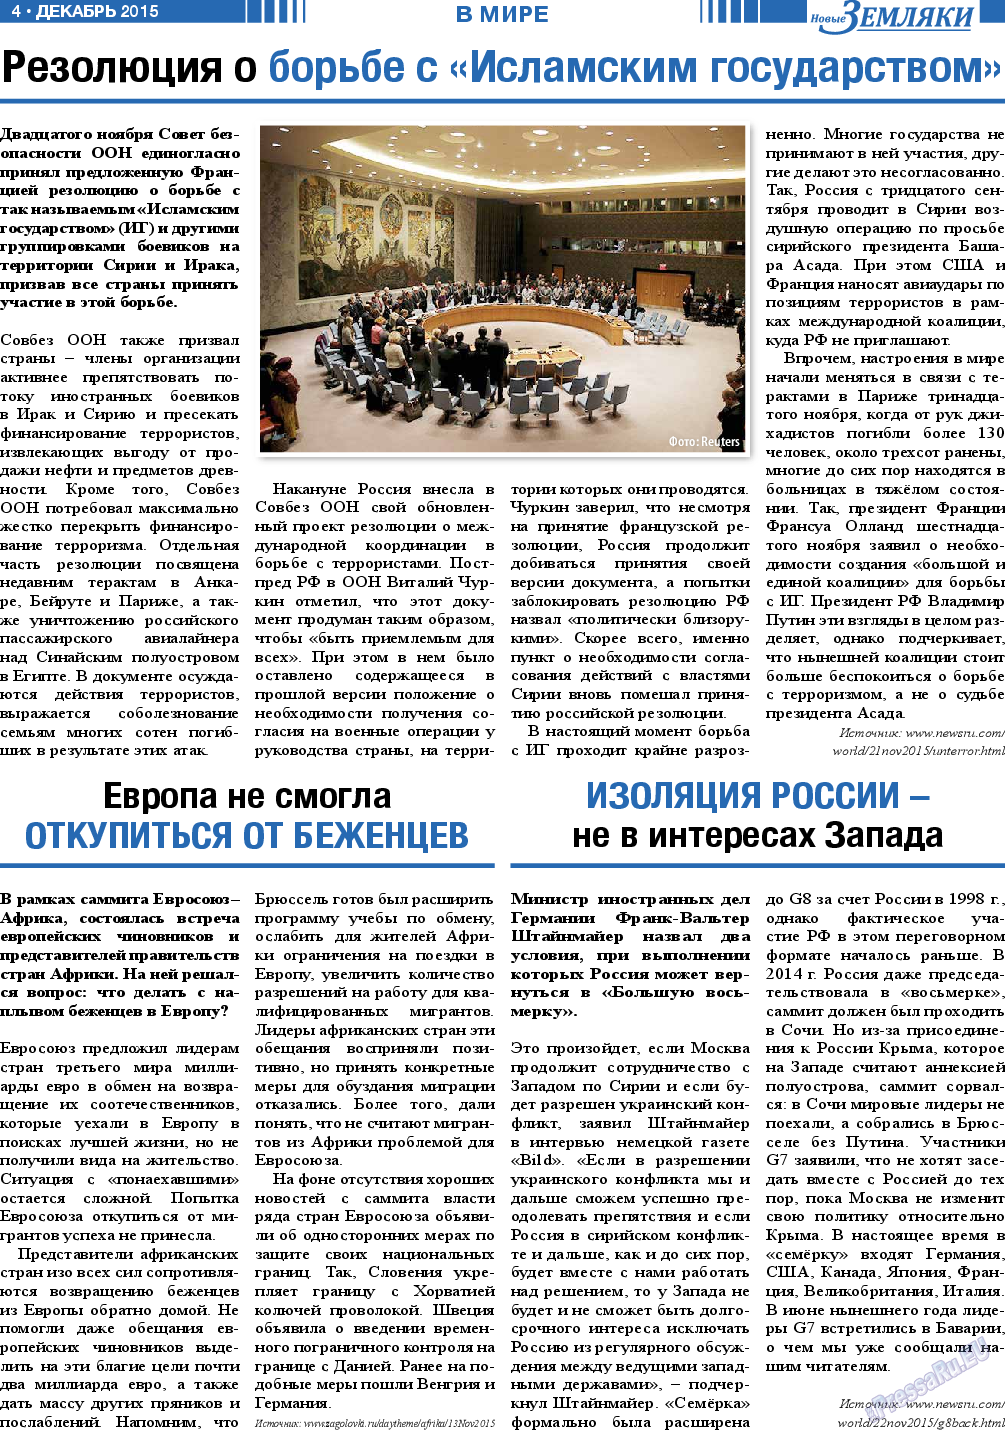 Новые Земляки, газета. 2015 №12 стр.4